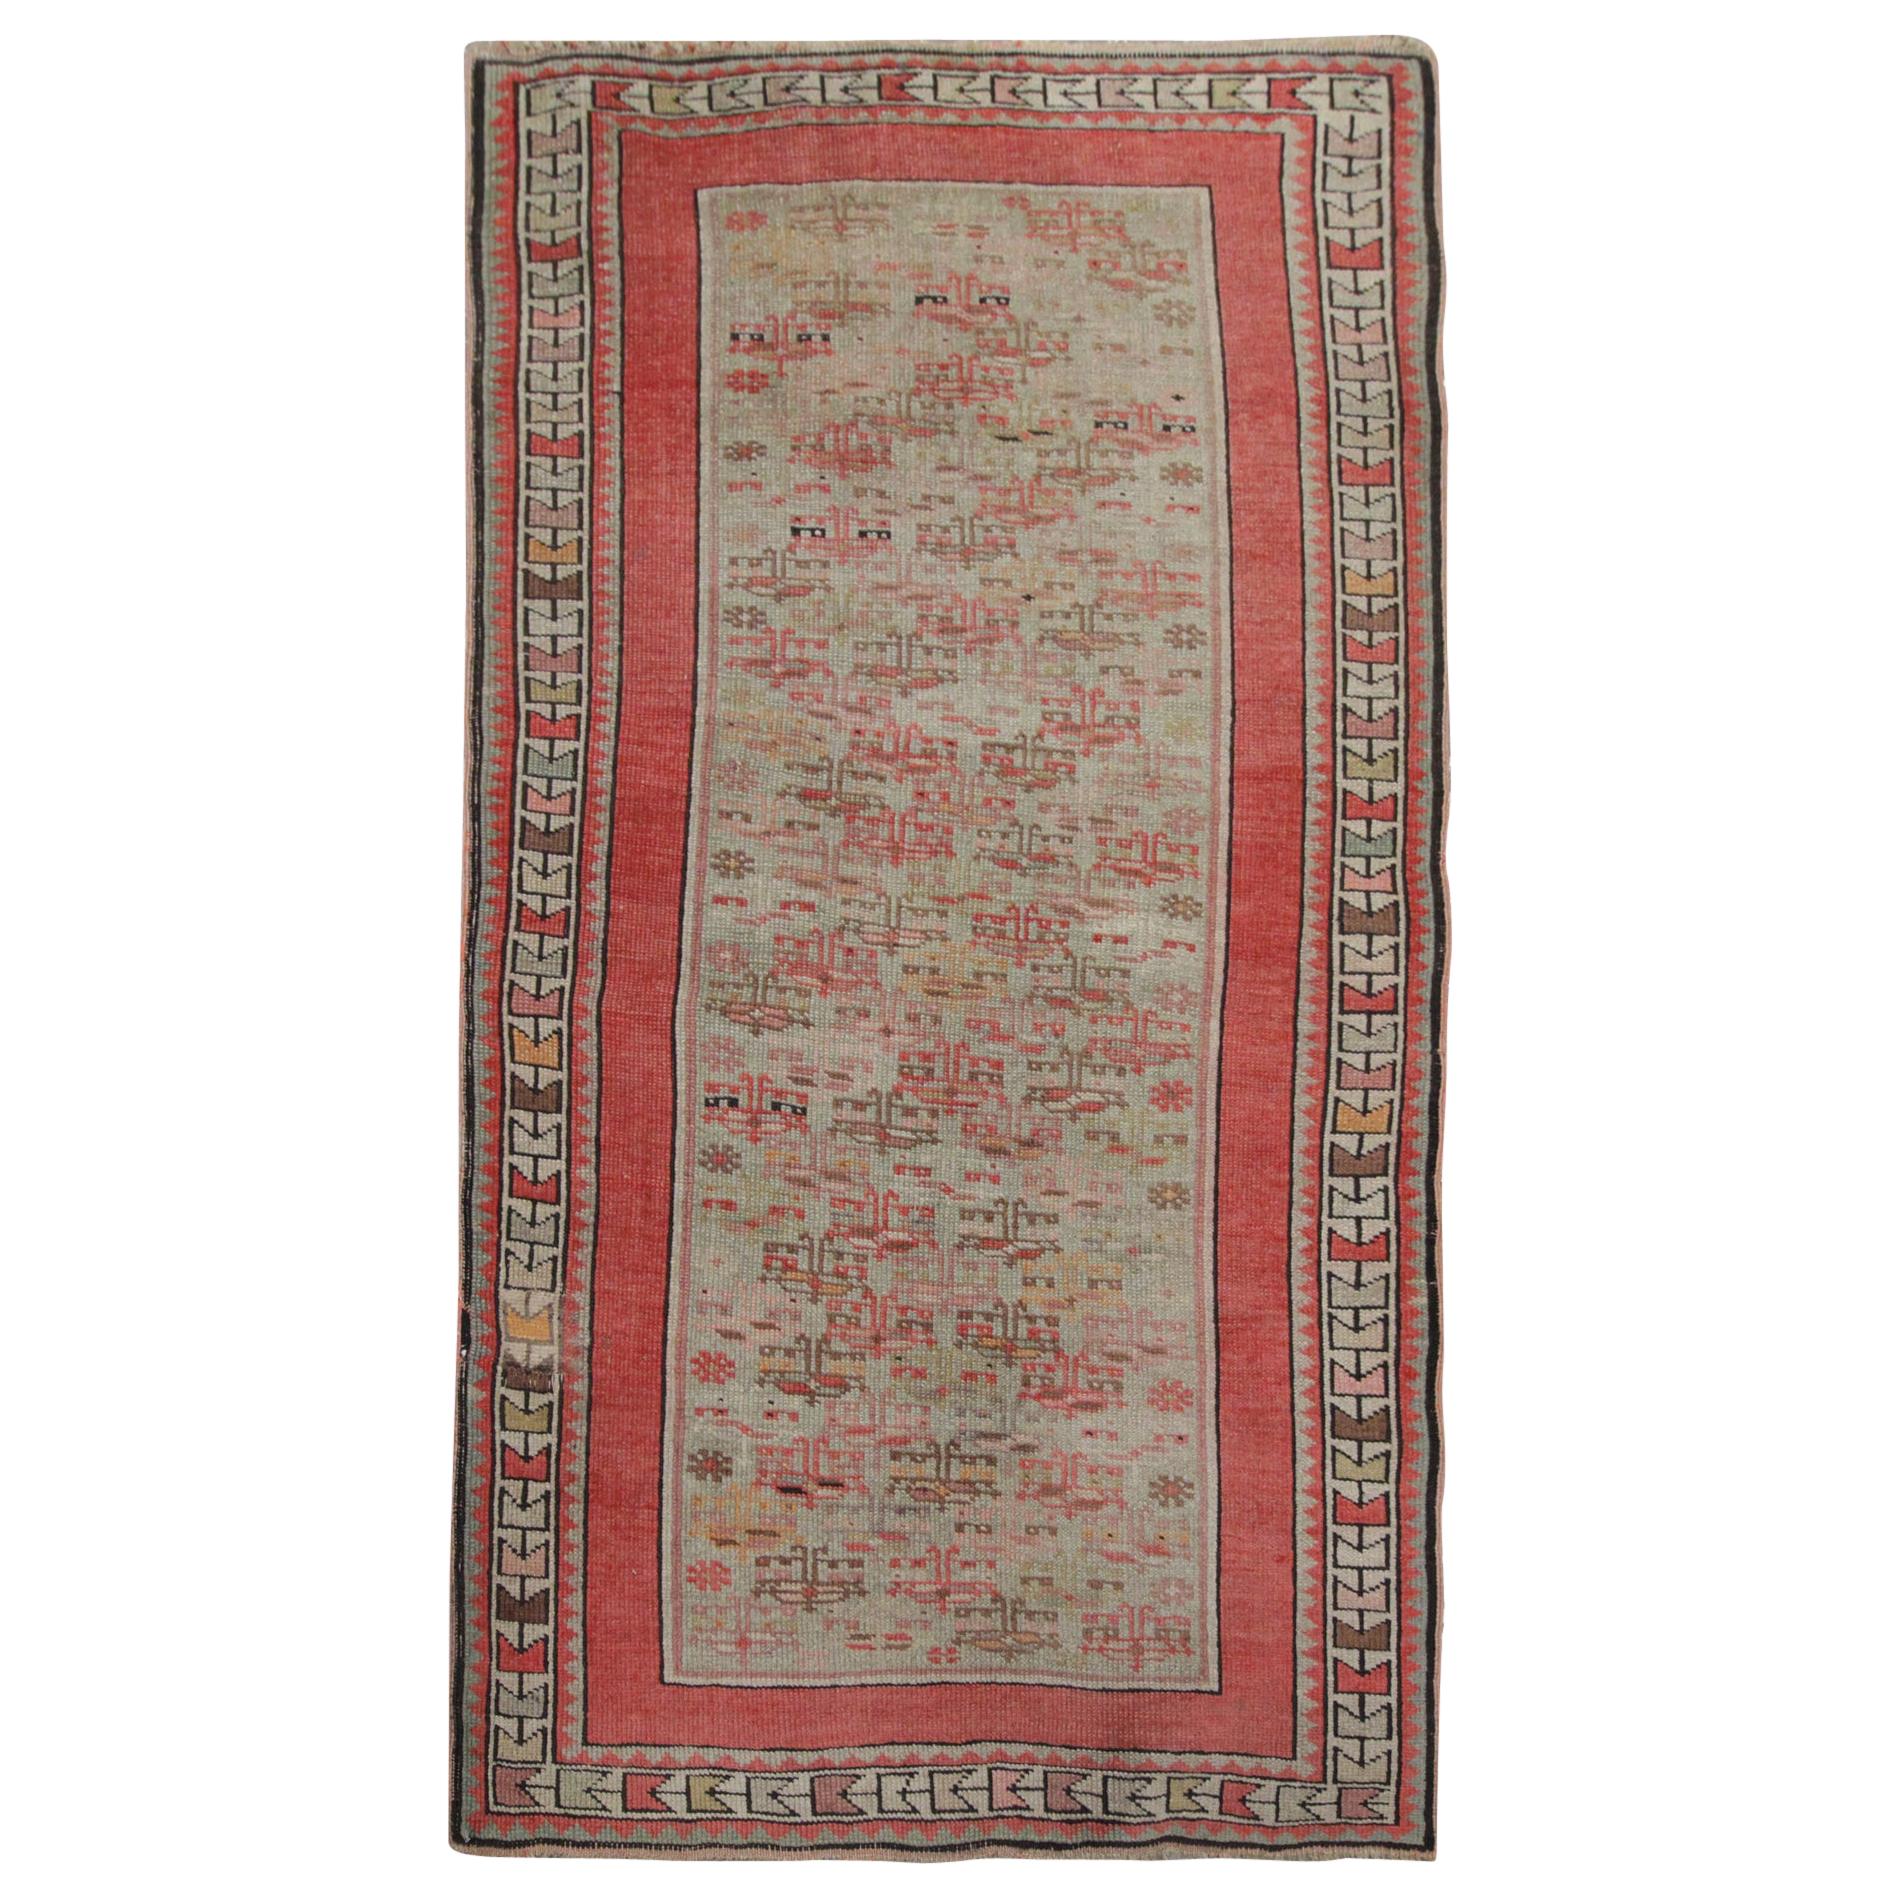 Qualität Antiker Teppich Kaukasischer Teppich Orientalisch Rosa Handgefertigt Wohnzimmerteppich